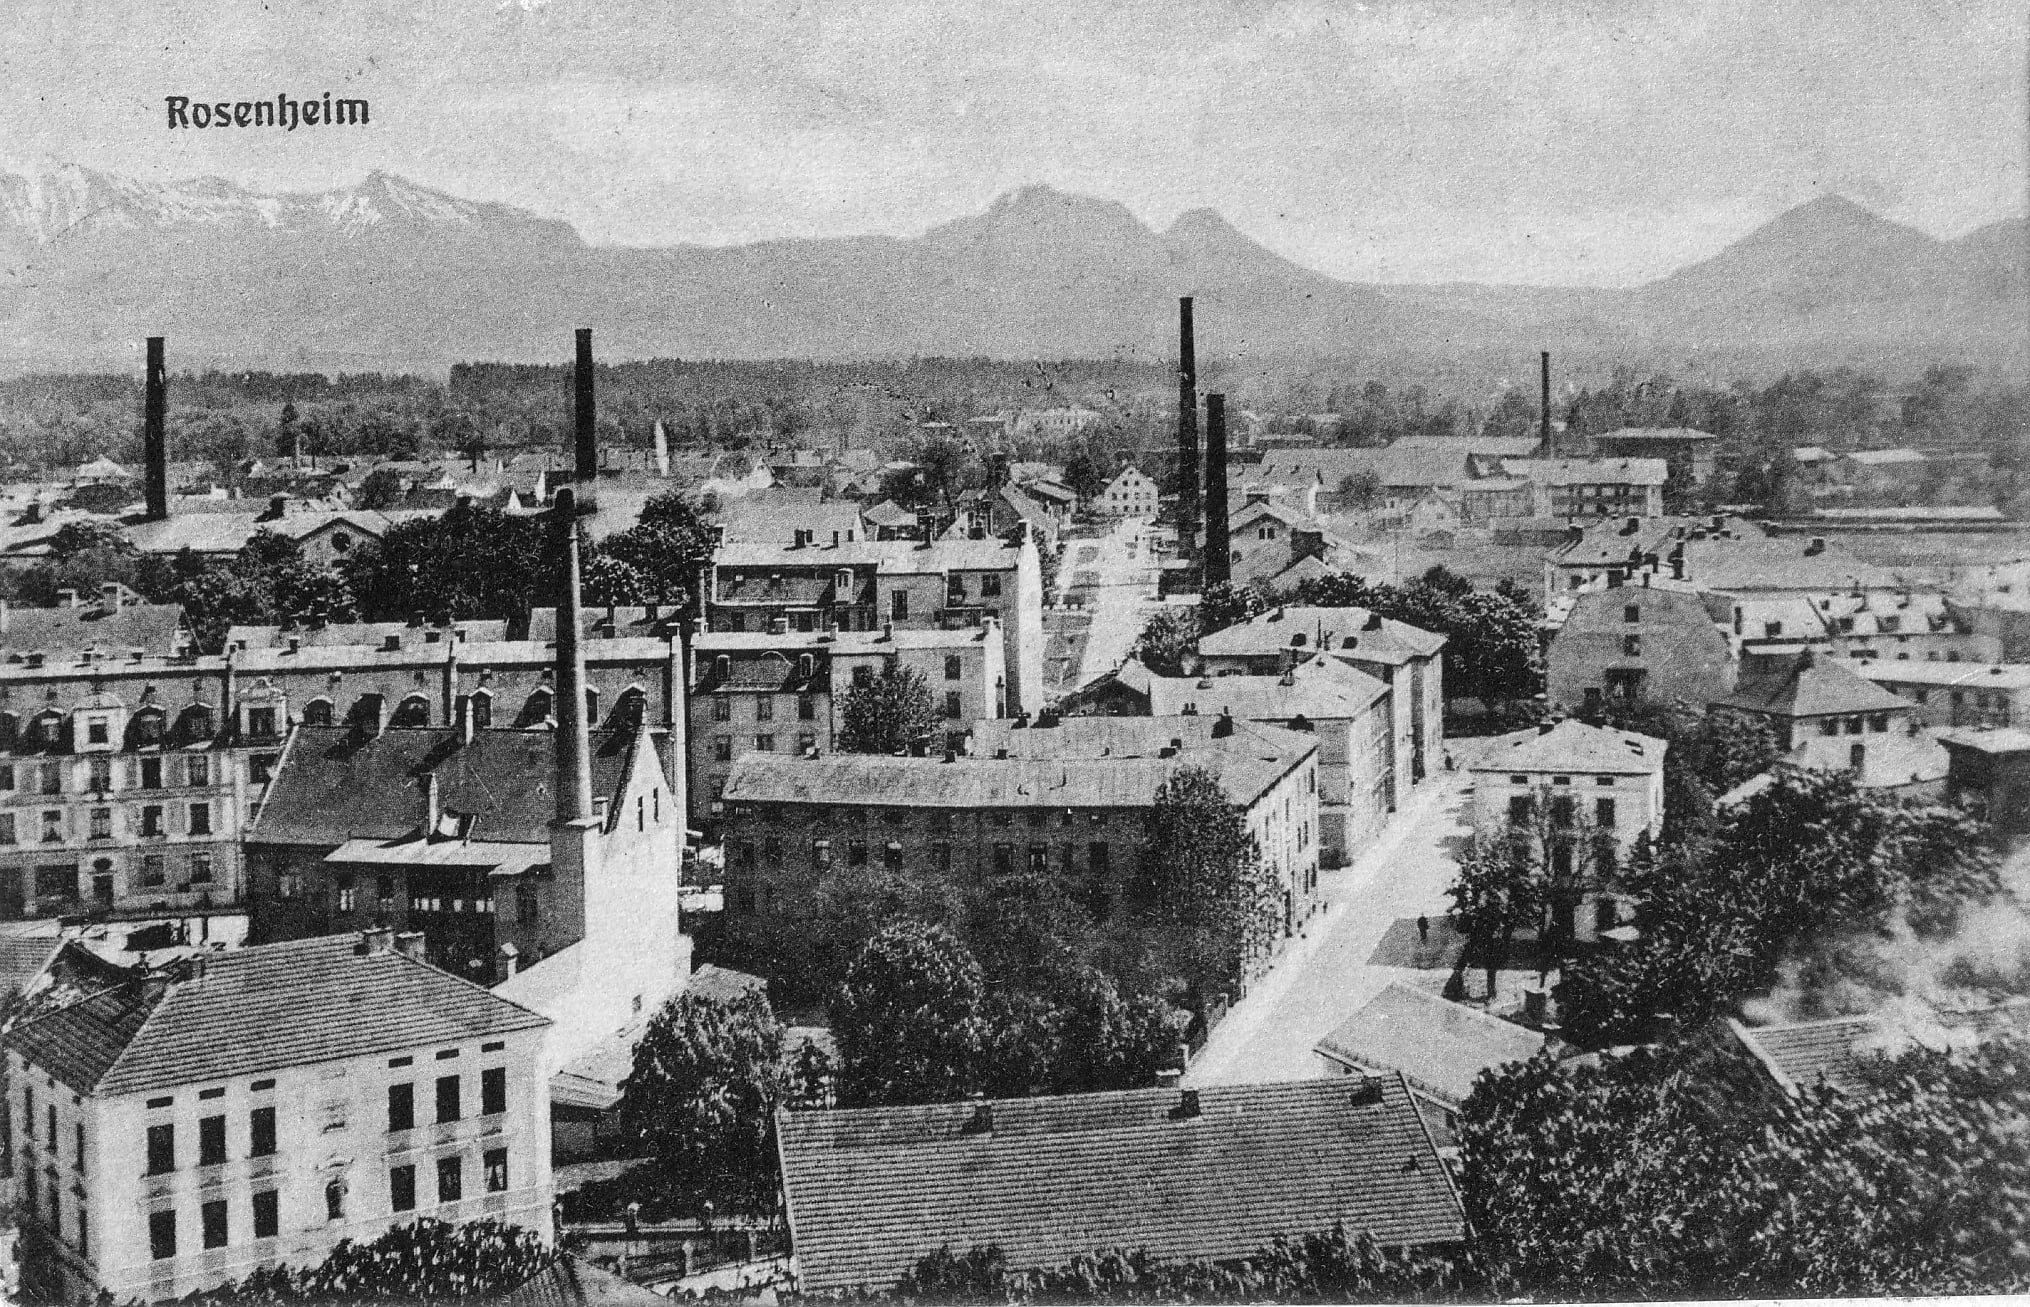 Luftbild der Stadt Rosenheim aus dem Jahr 1912